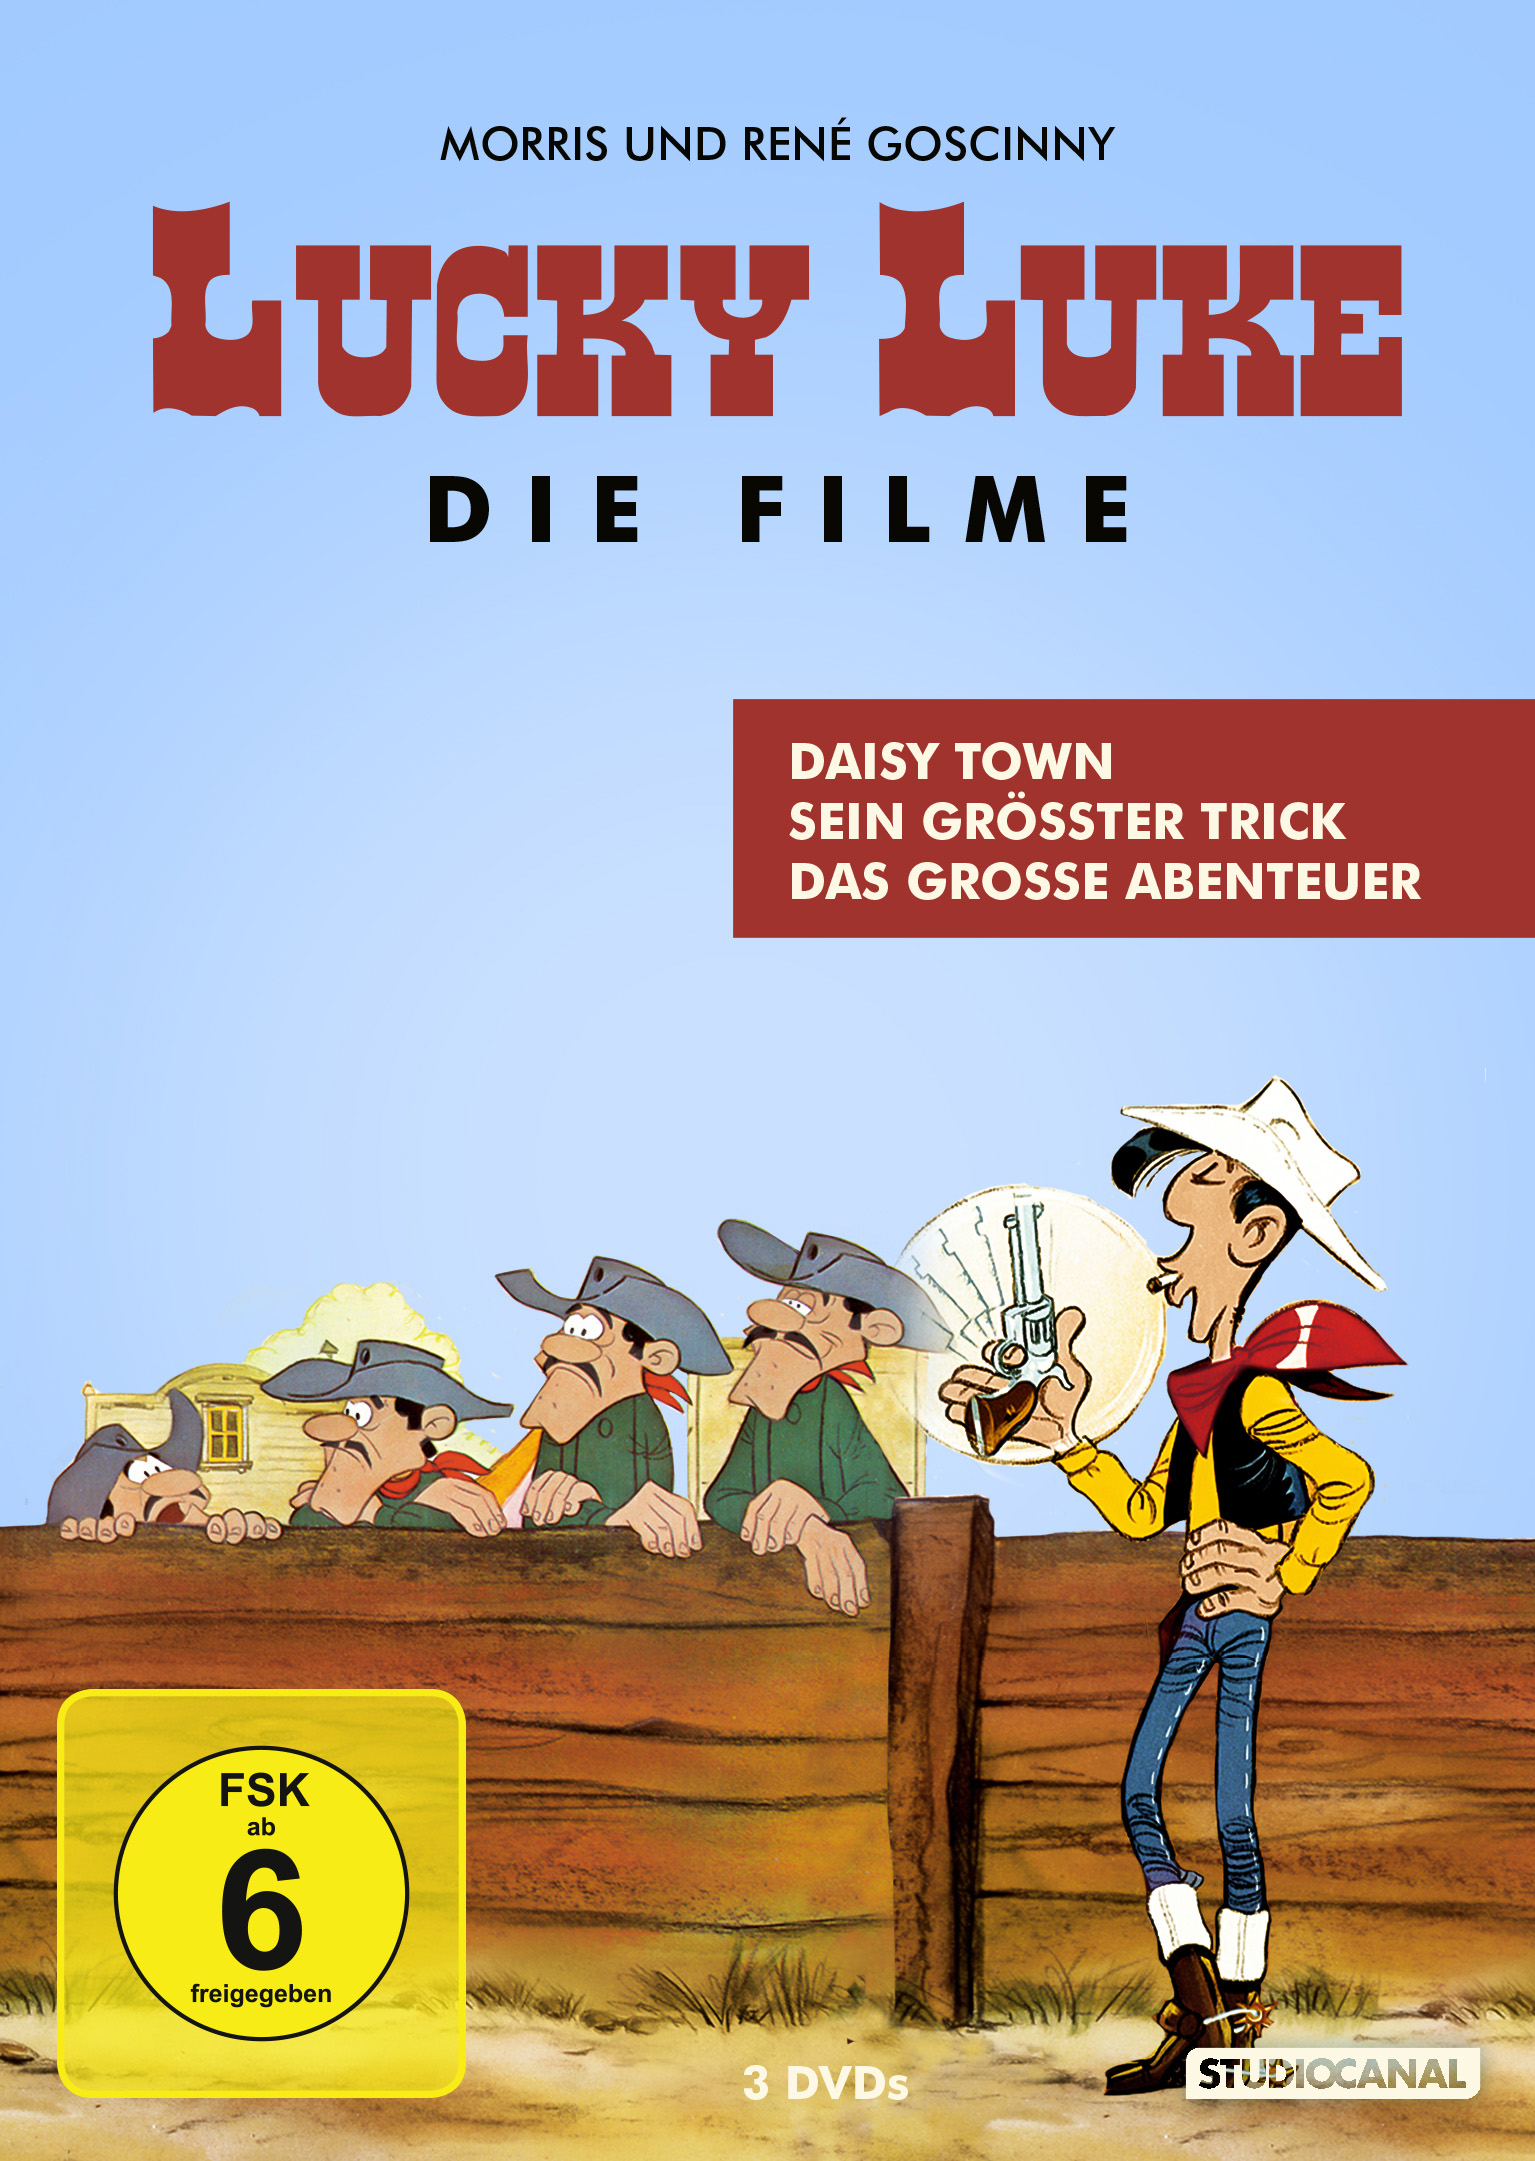 grosse Abenteuer Daisy Town, Sein Das Trick, DVD grösster